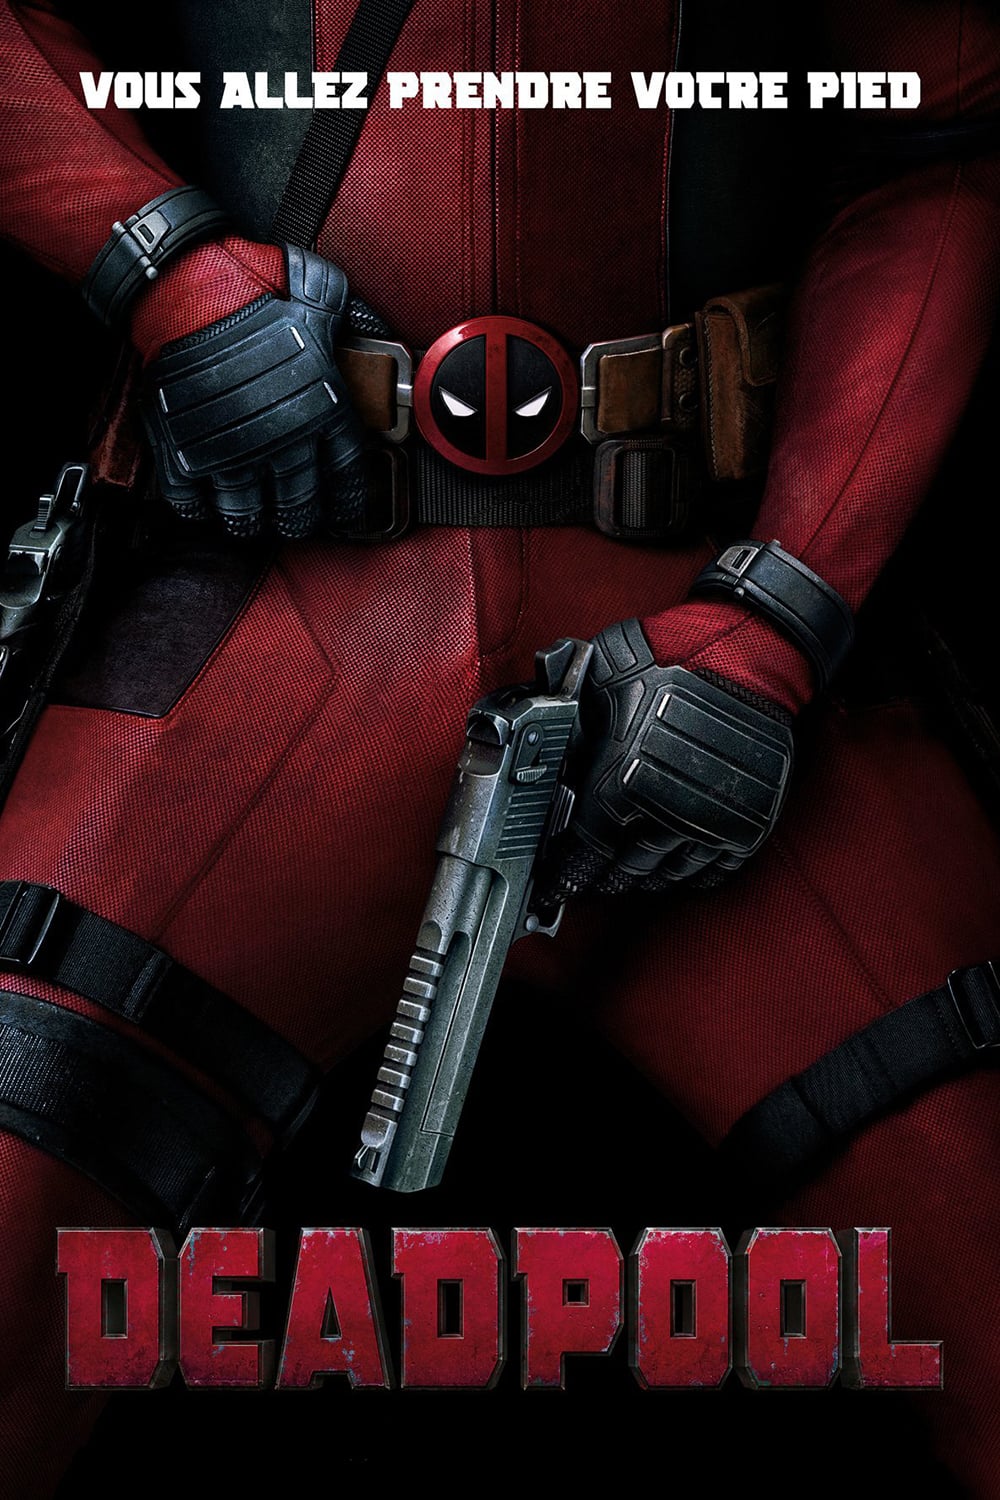 Affiche du film "Deadpool"